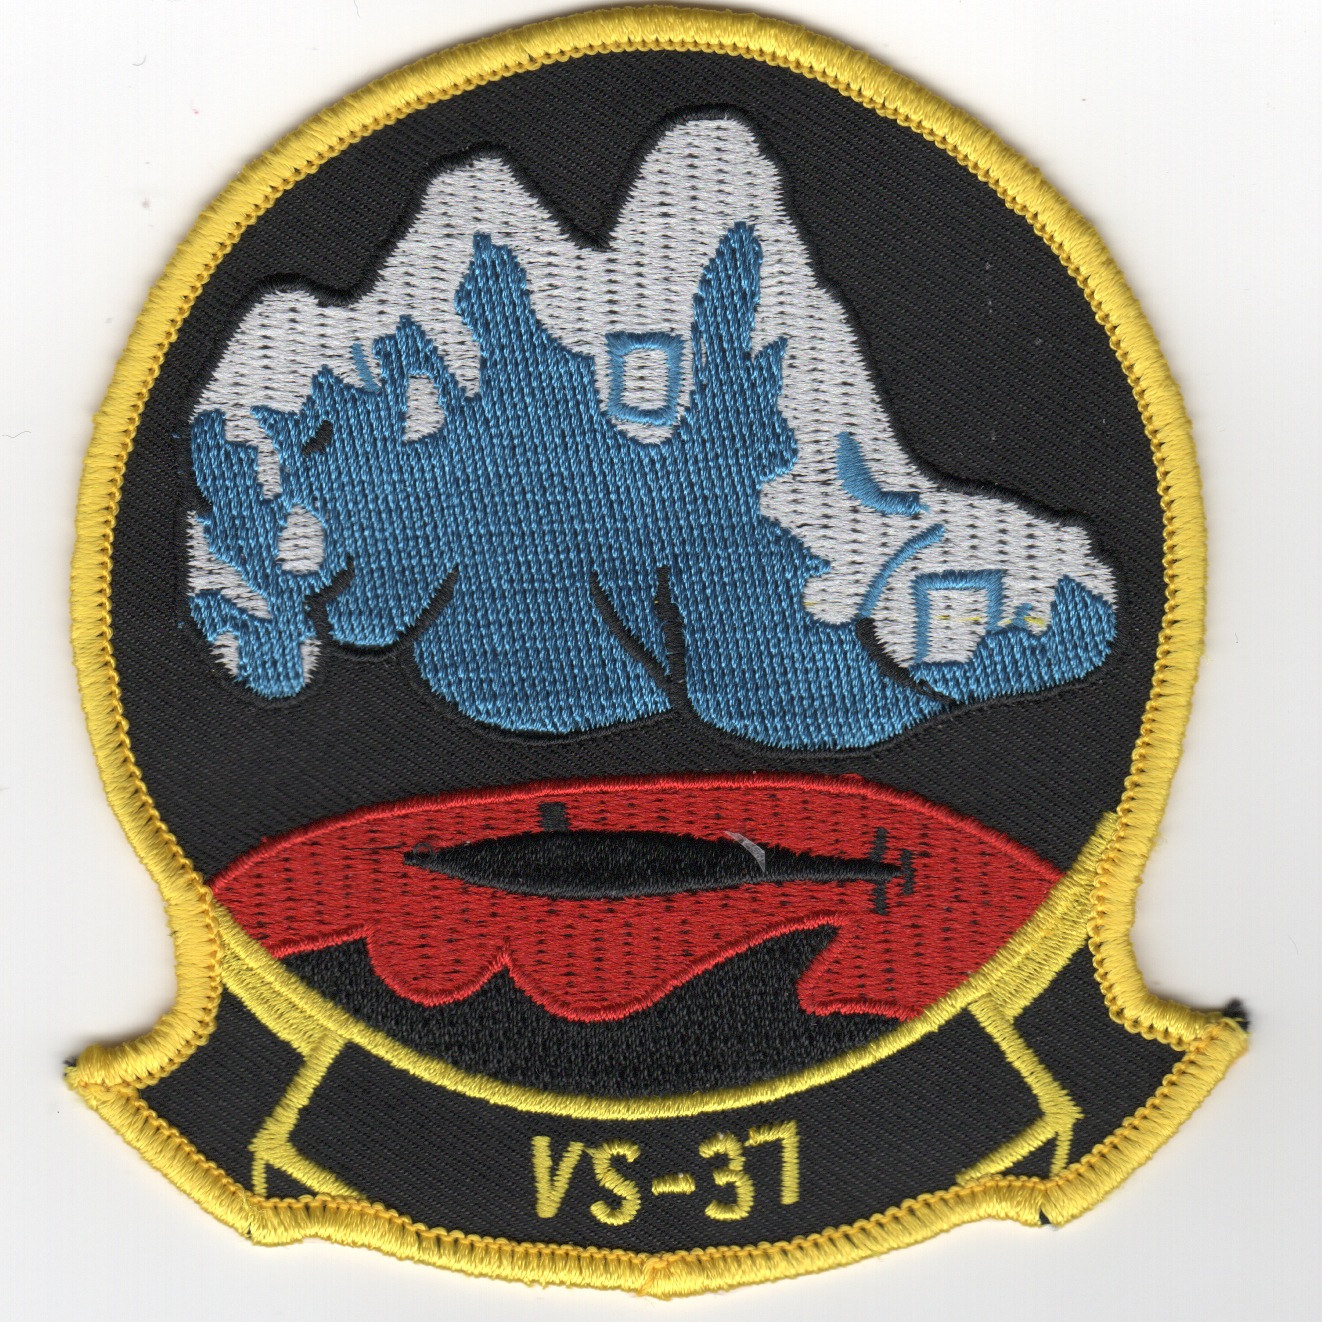 VS-37 Squadron Patch